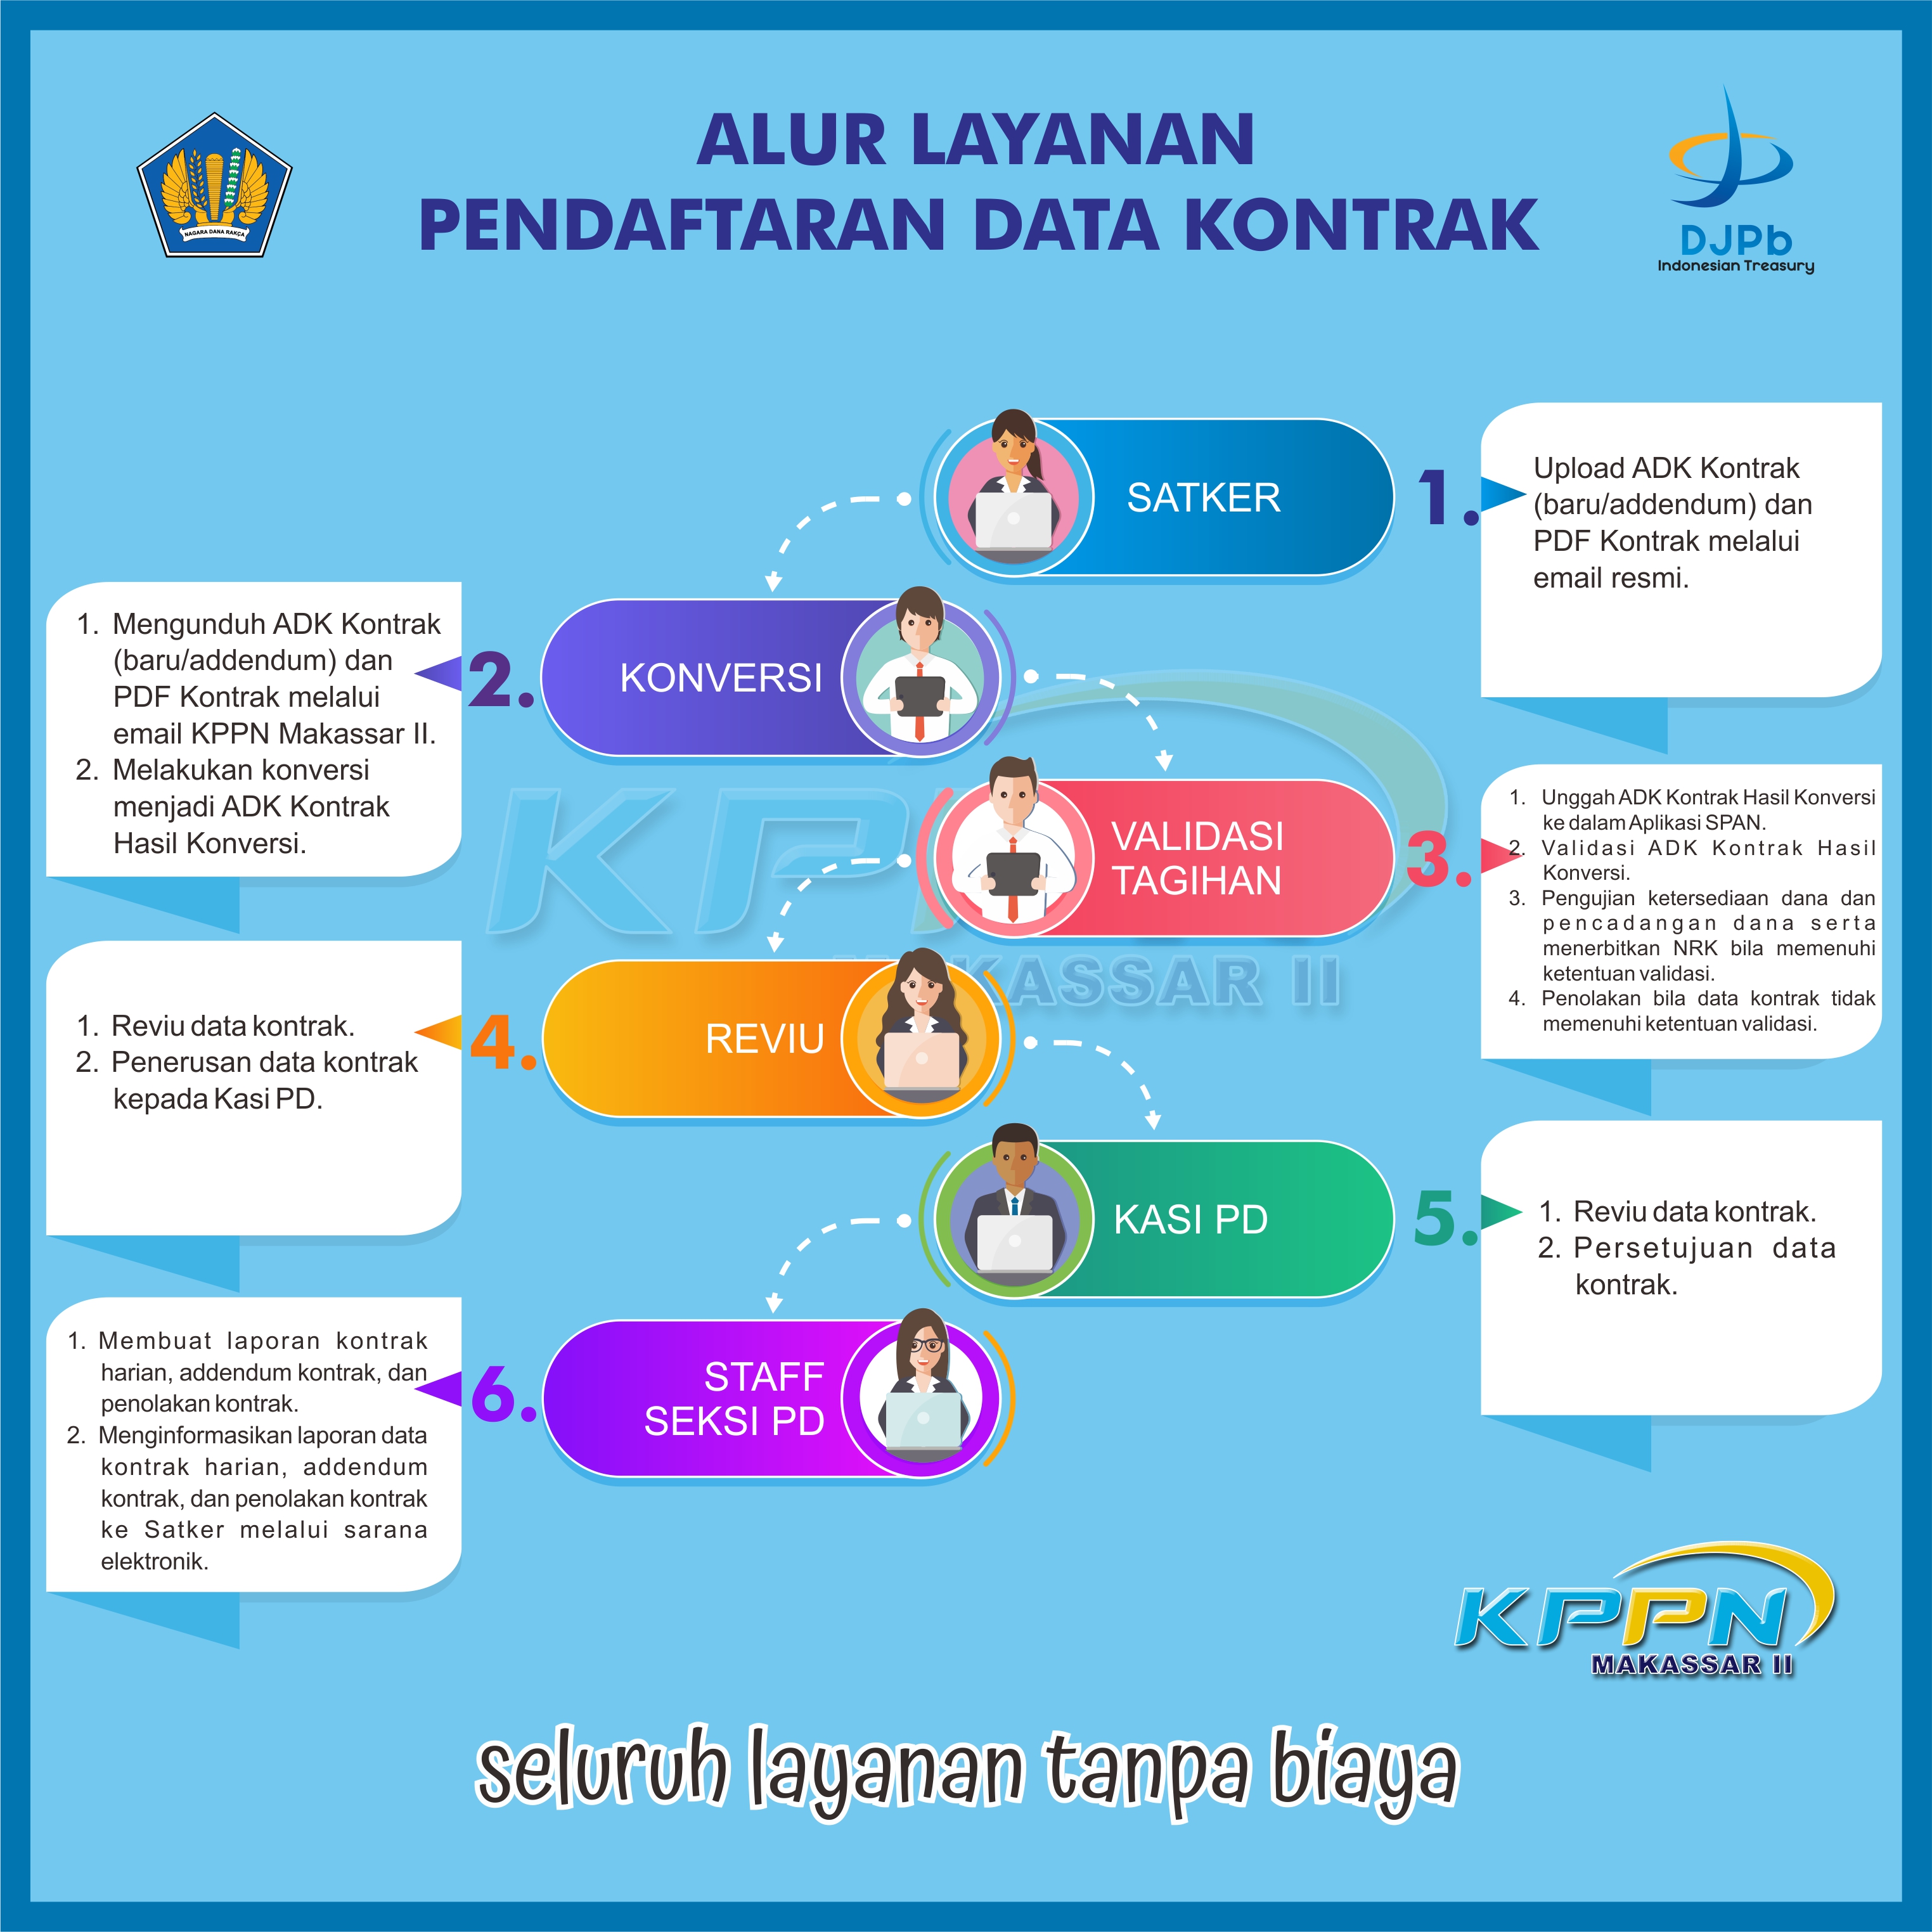 Alur Pendaftaran Data Kontrak KPPN Makassar II